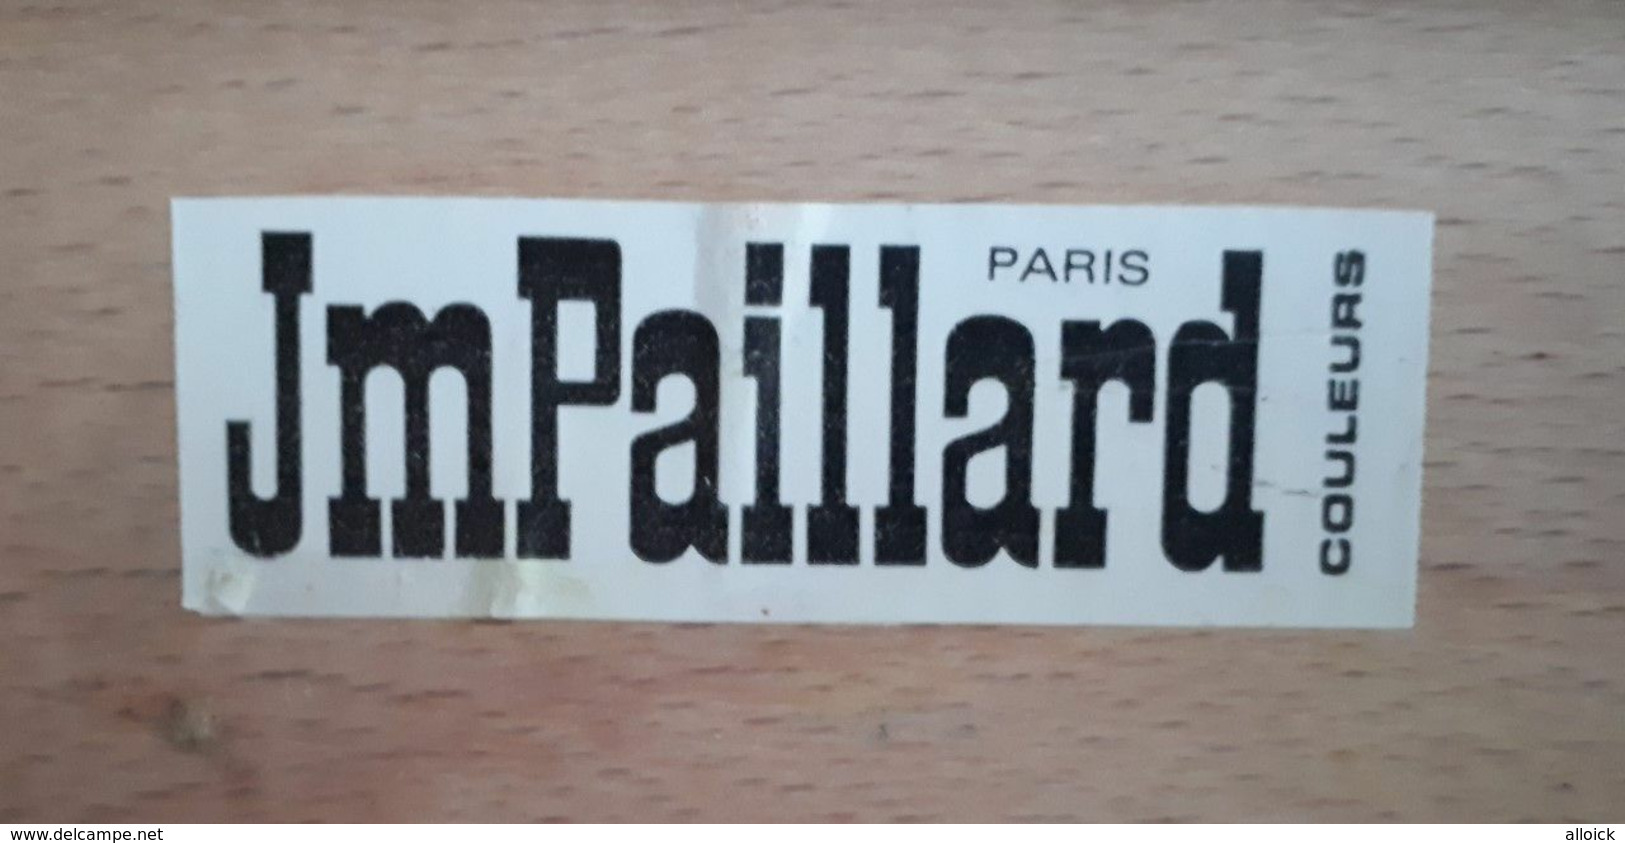 Mallette à peinture  Jm Paillard  Paris (années 60 - 80)